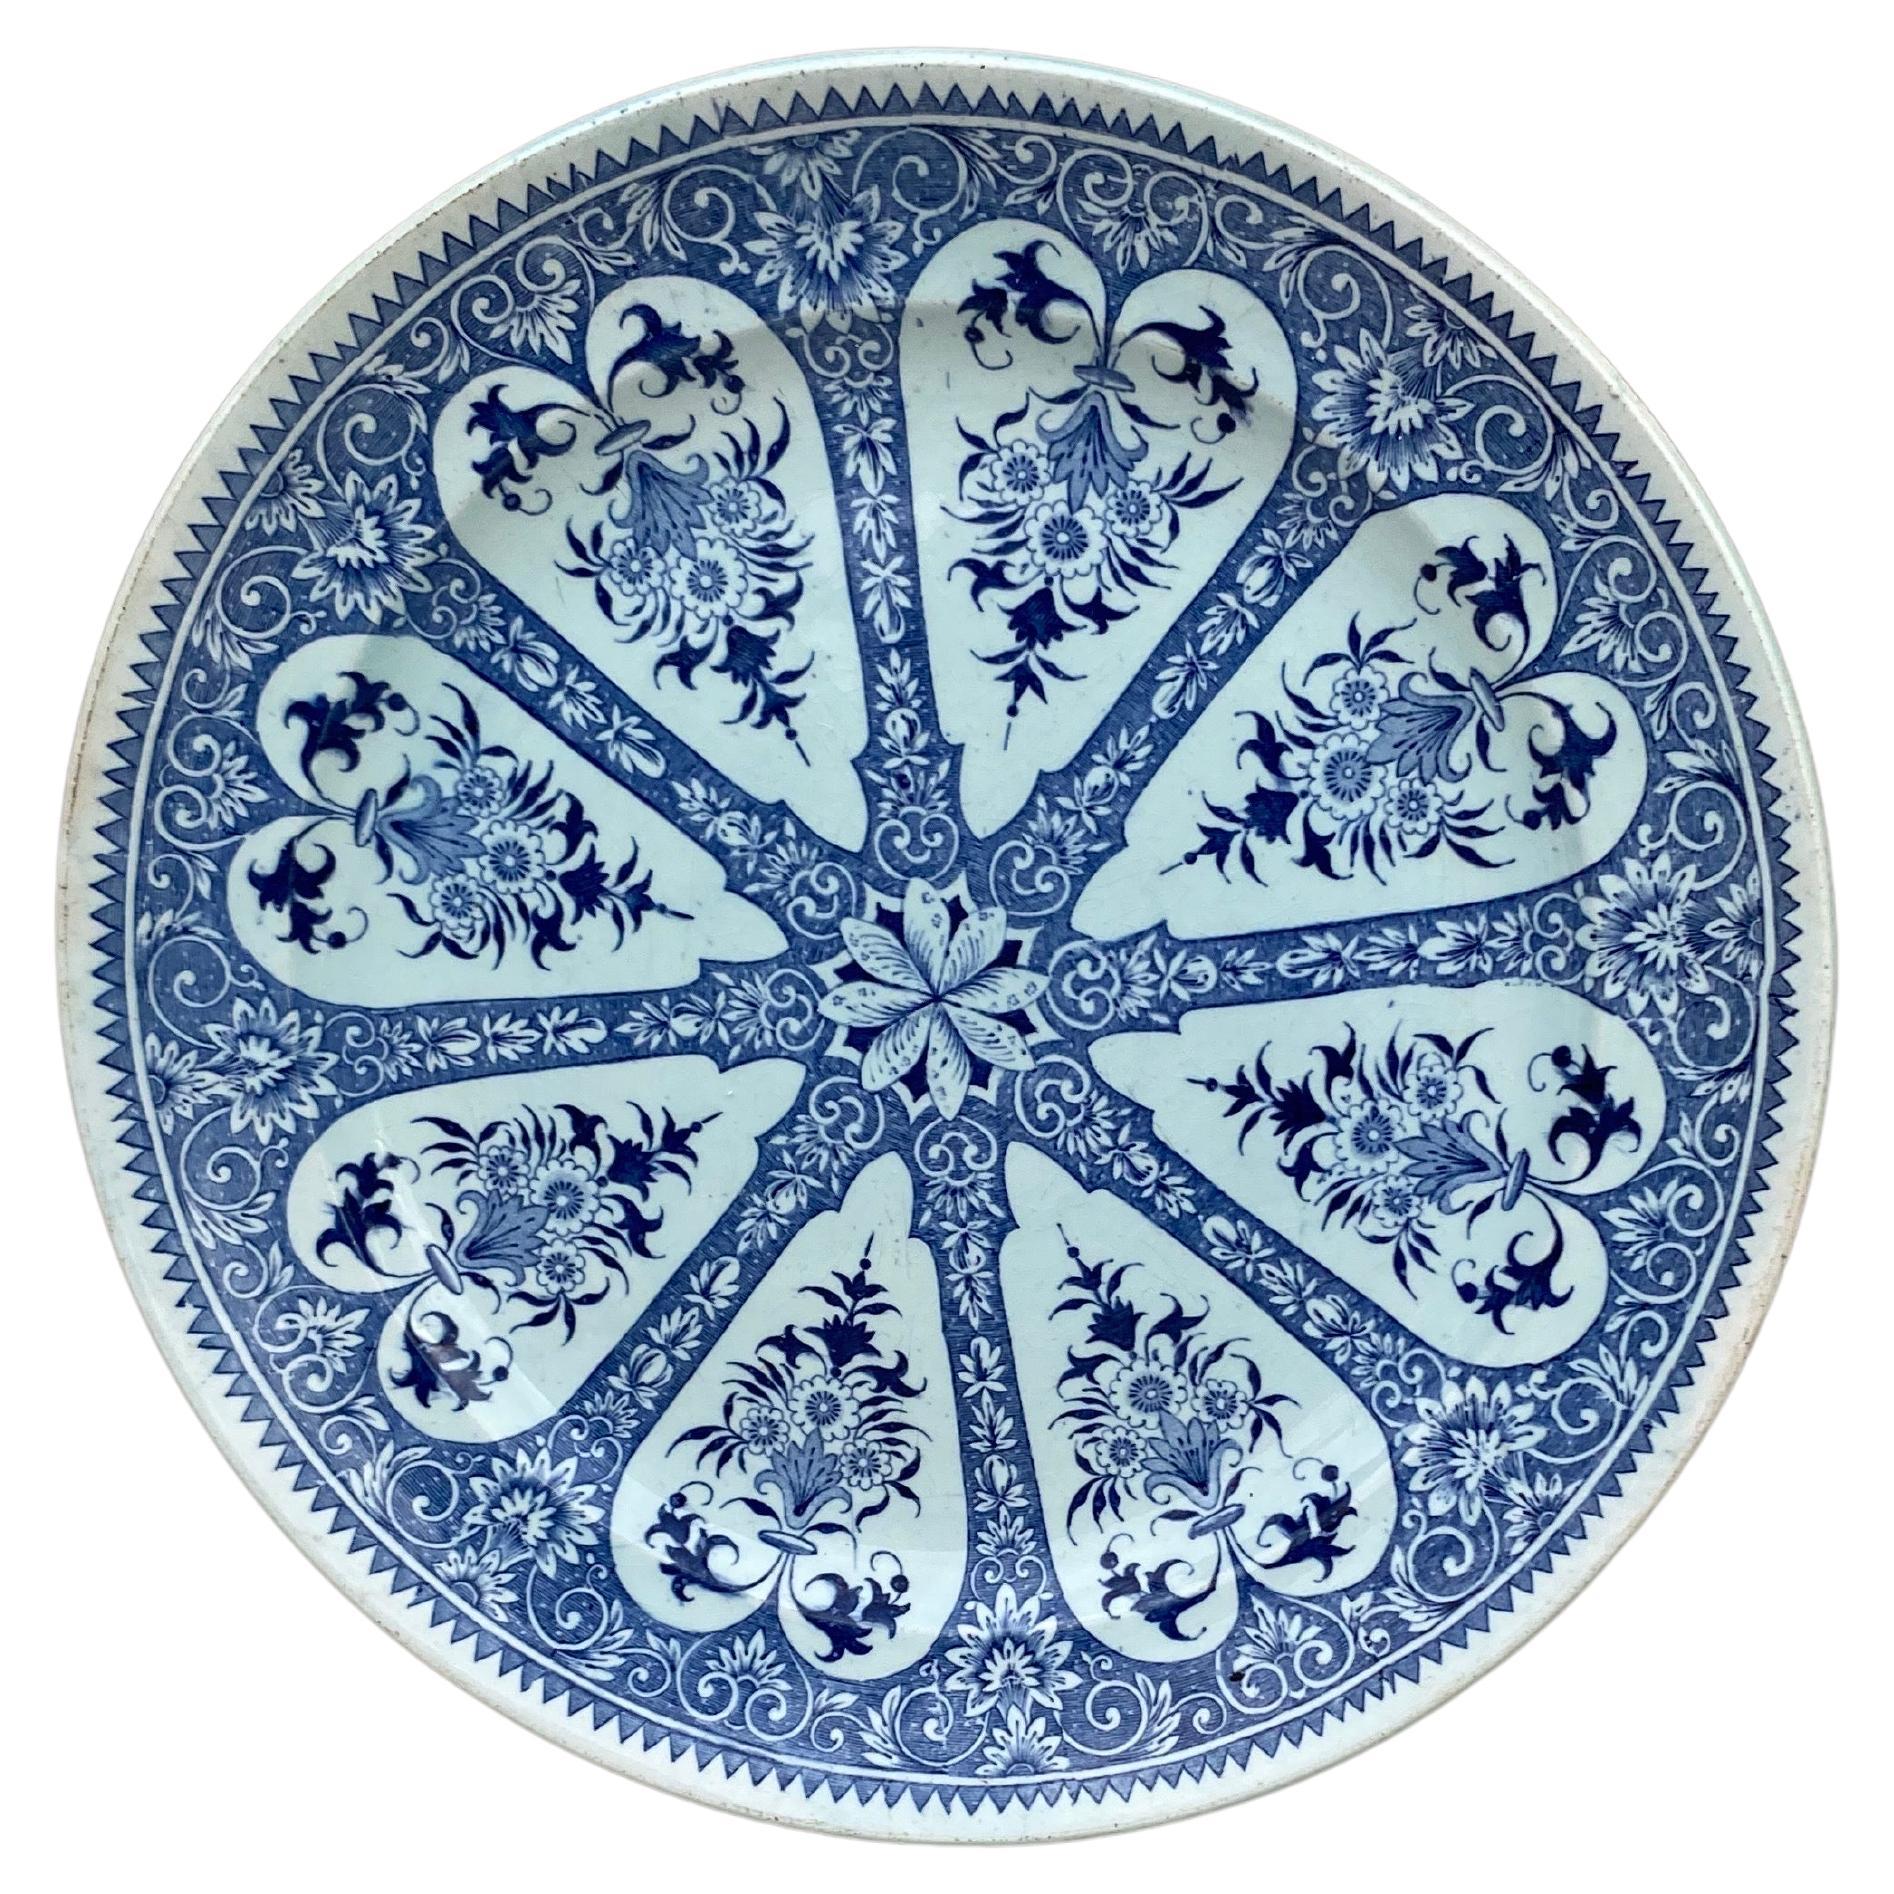 Assiette à dîner en faïence bleue et blanche du 19ème siècle Sarreguemines